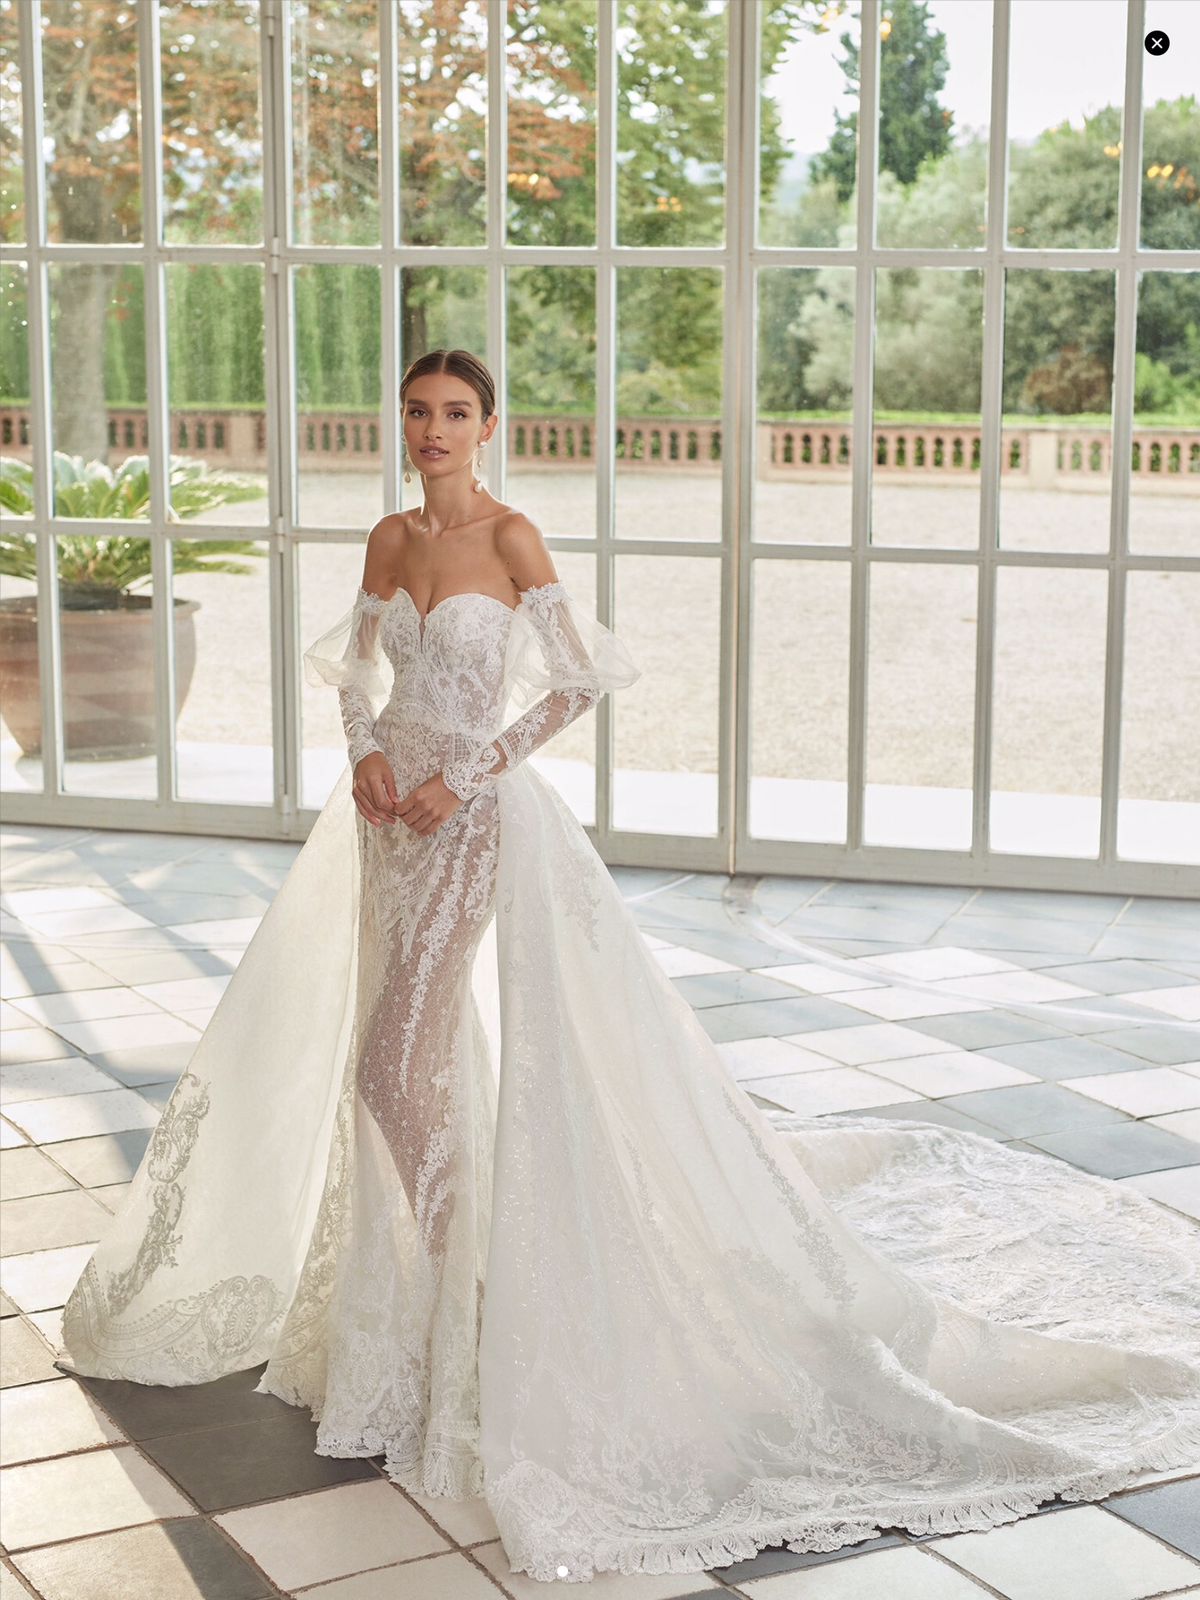 Vestido de noiva coleção 2022 casamento princesa boho minimalista bh atelier